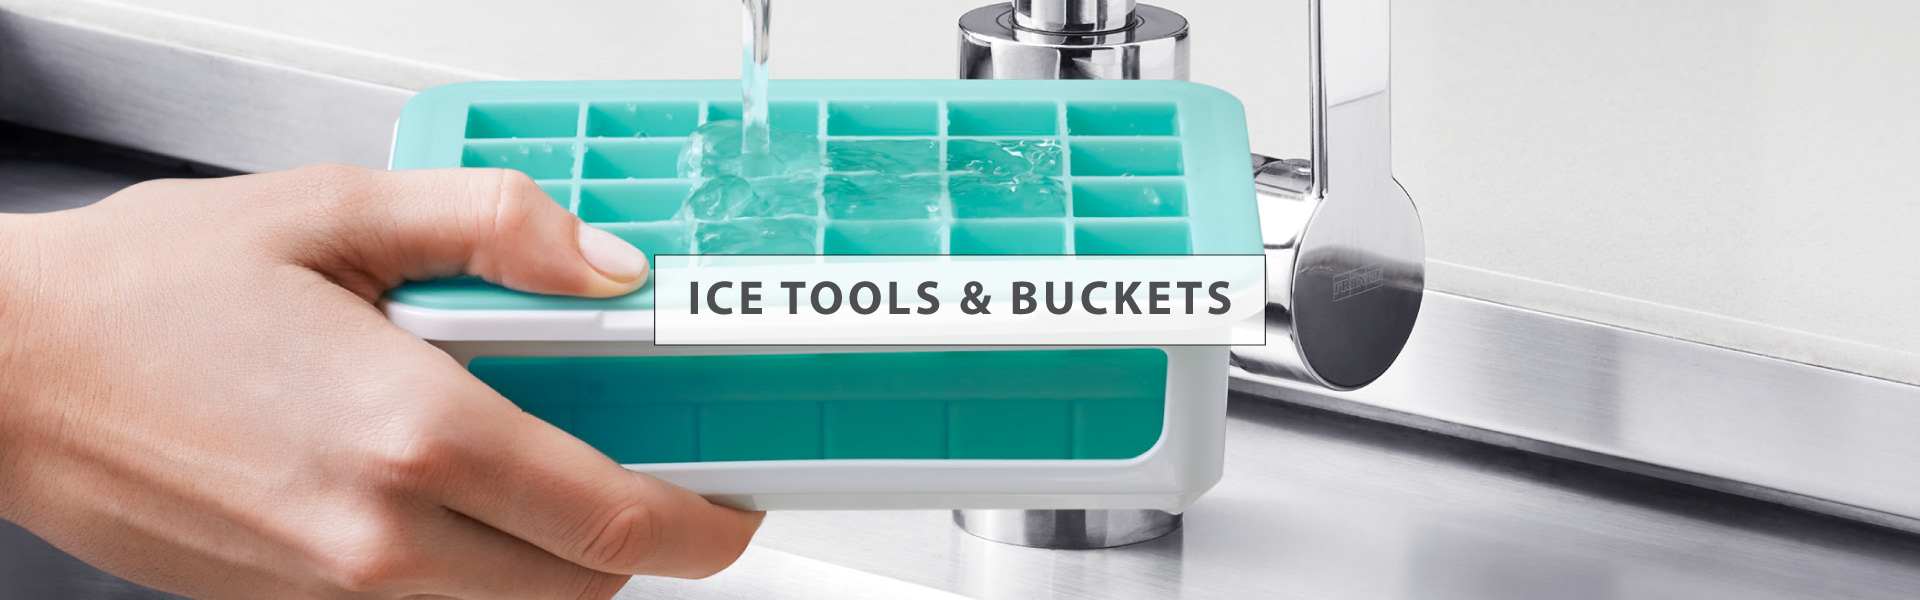 ICE TOOLS & BUCKETS